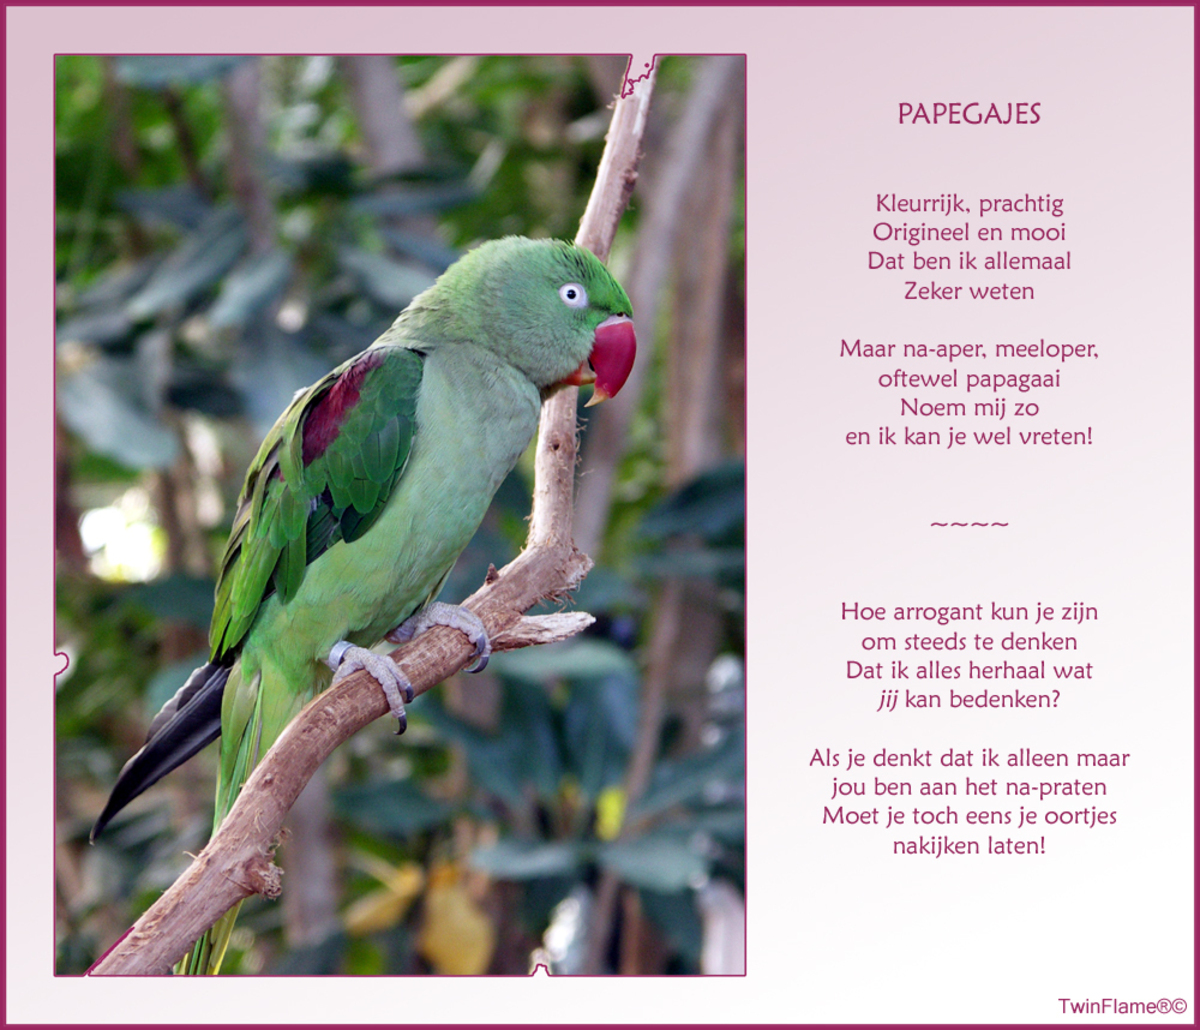 my favourite pet parrot essay